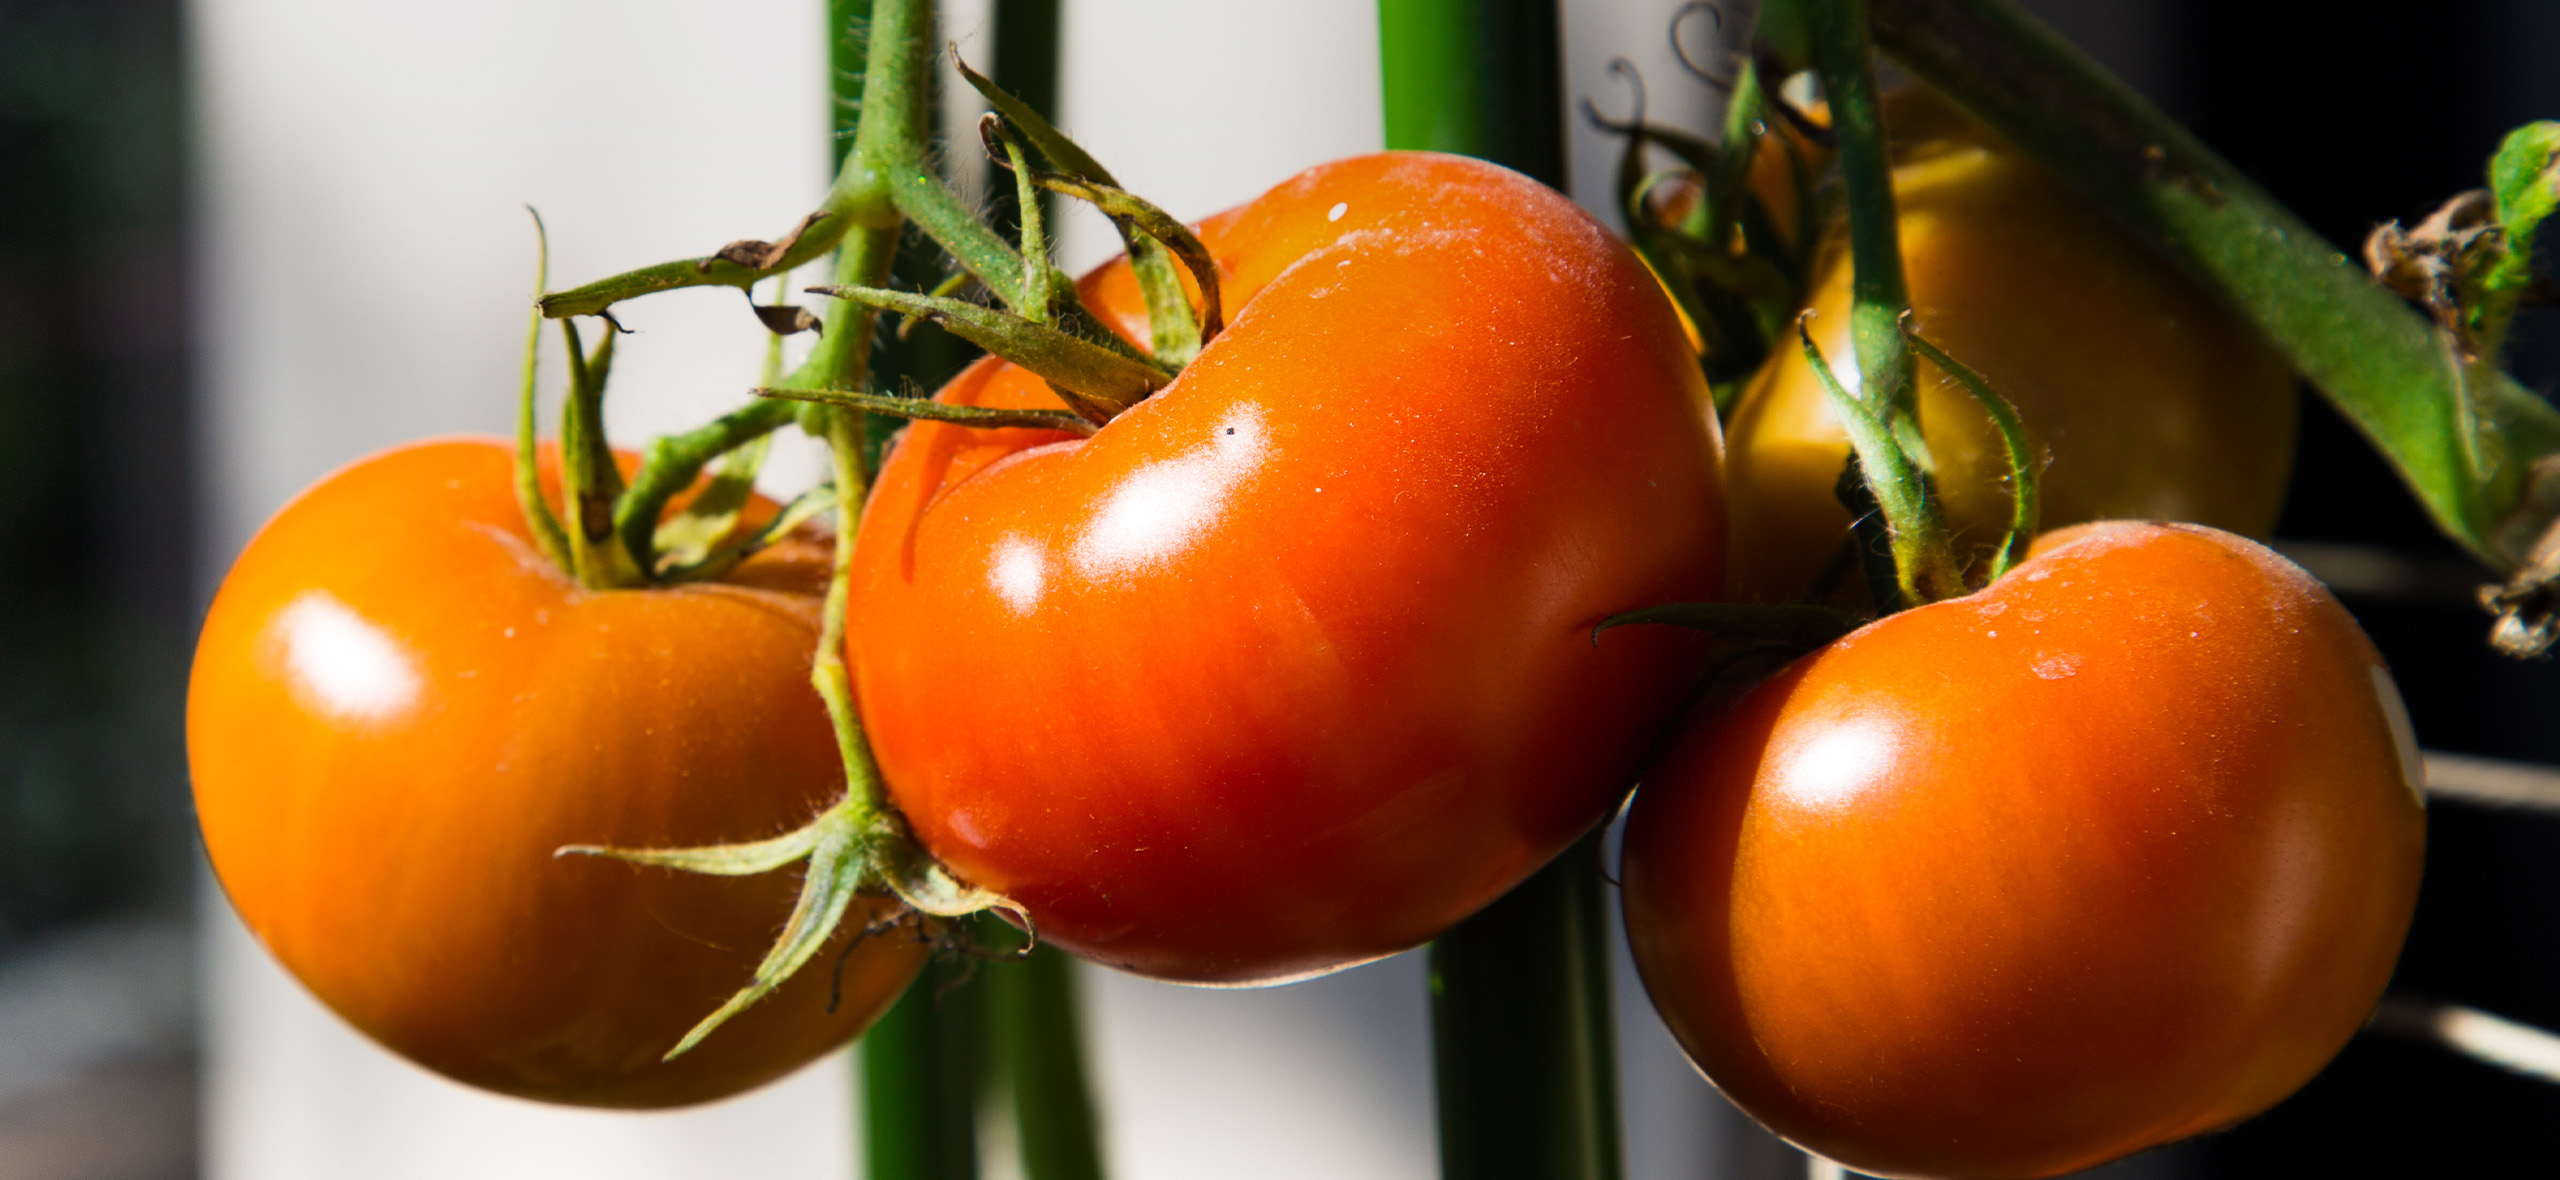 Как выбрать хорошие сорта помидоров: 6 советов опытного огородника для отличного урожая